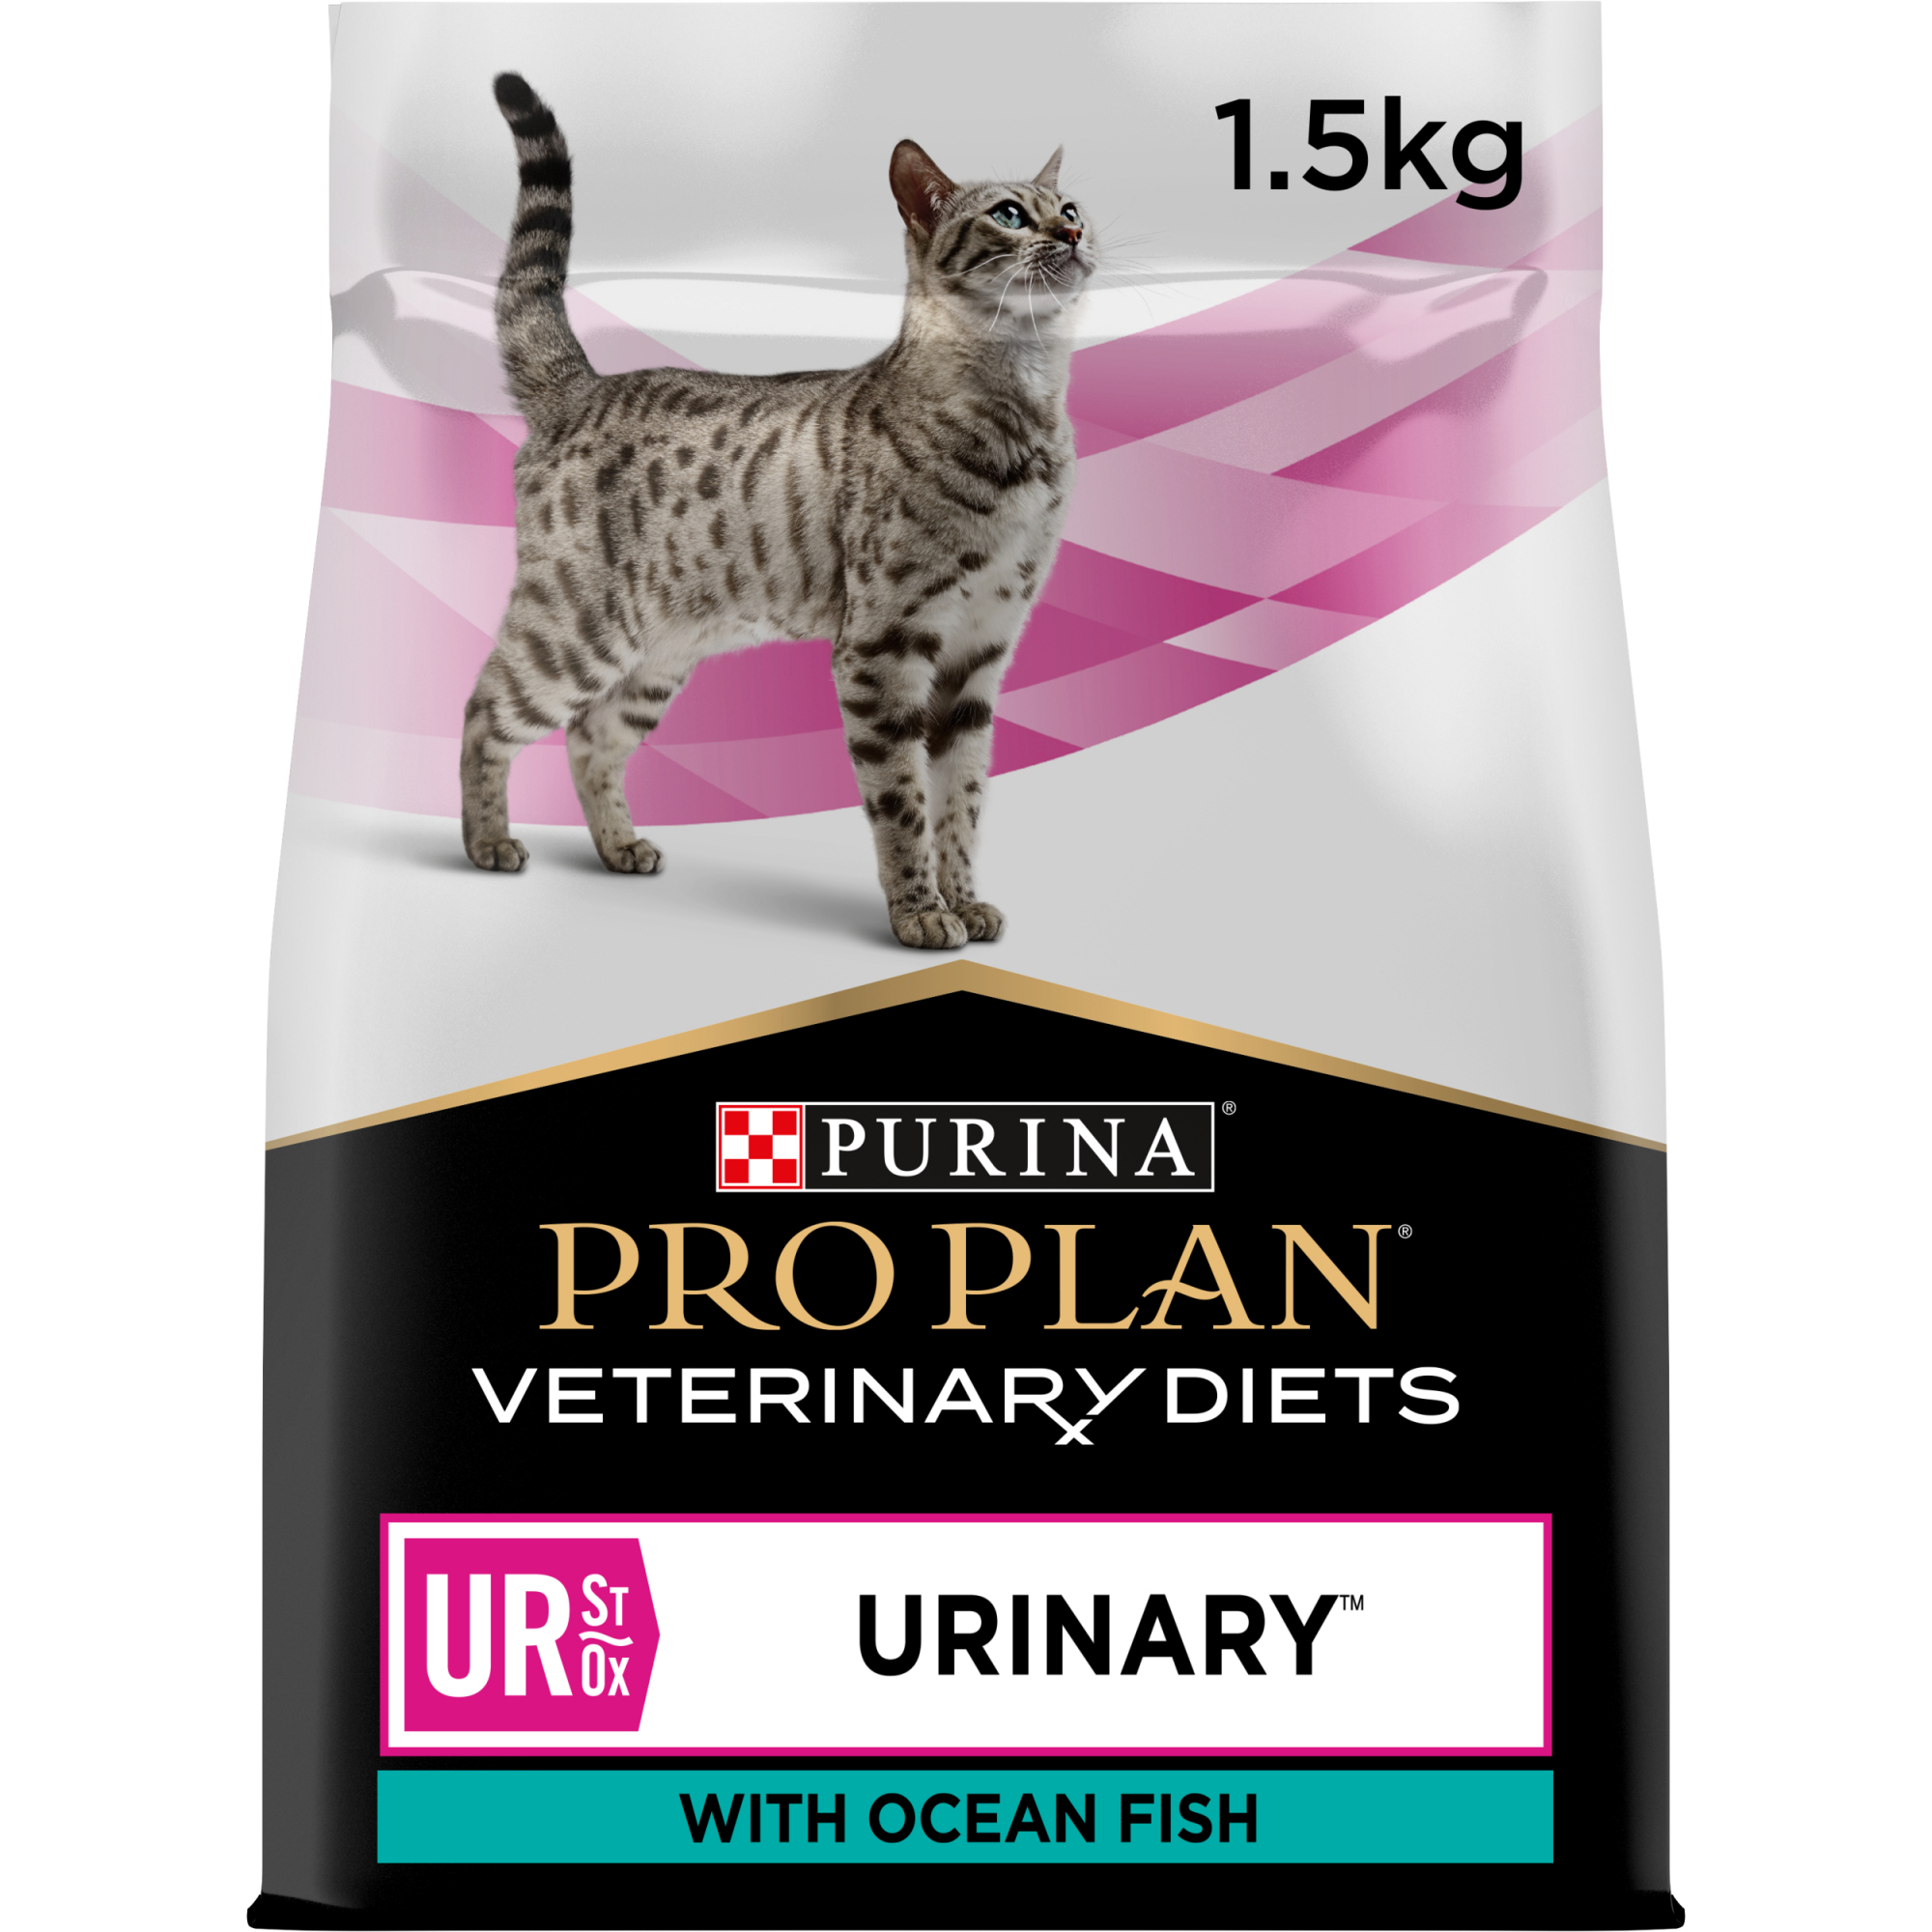 PRO PLAN Veterinary Diets Feline UR ST/OX URINARY au Poisson de l'océan